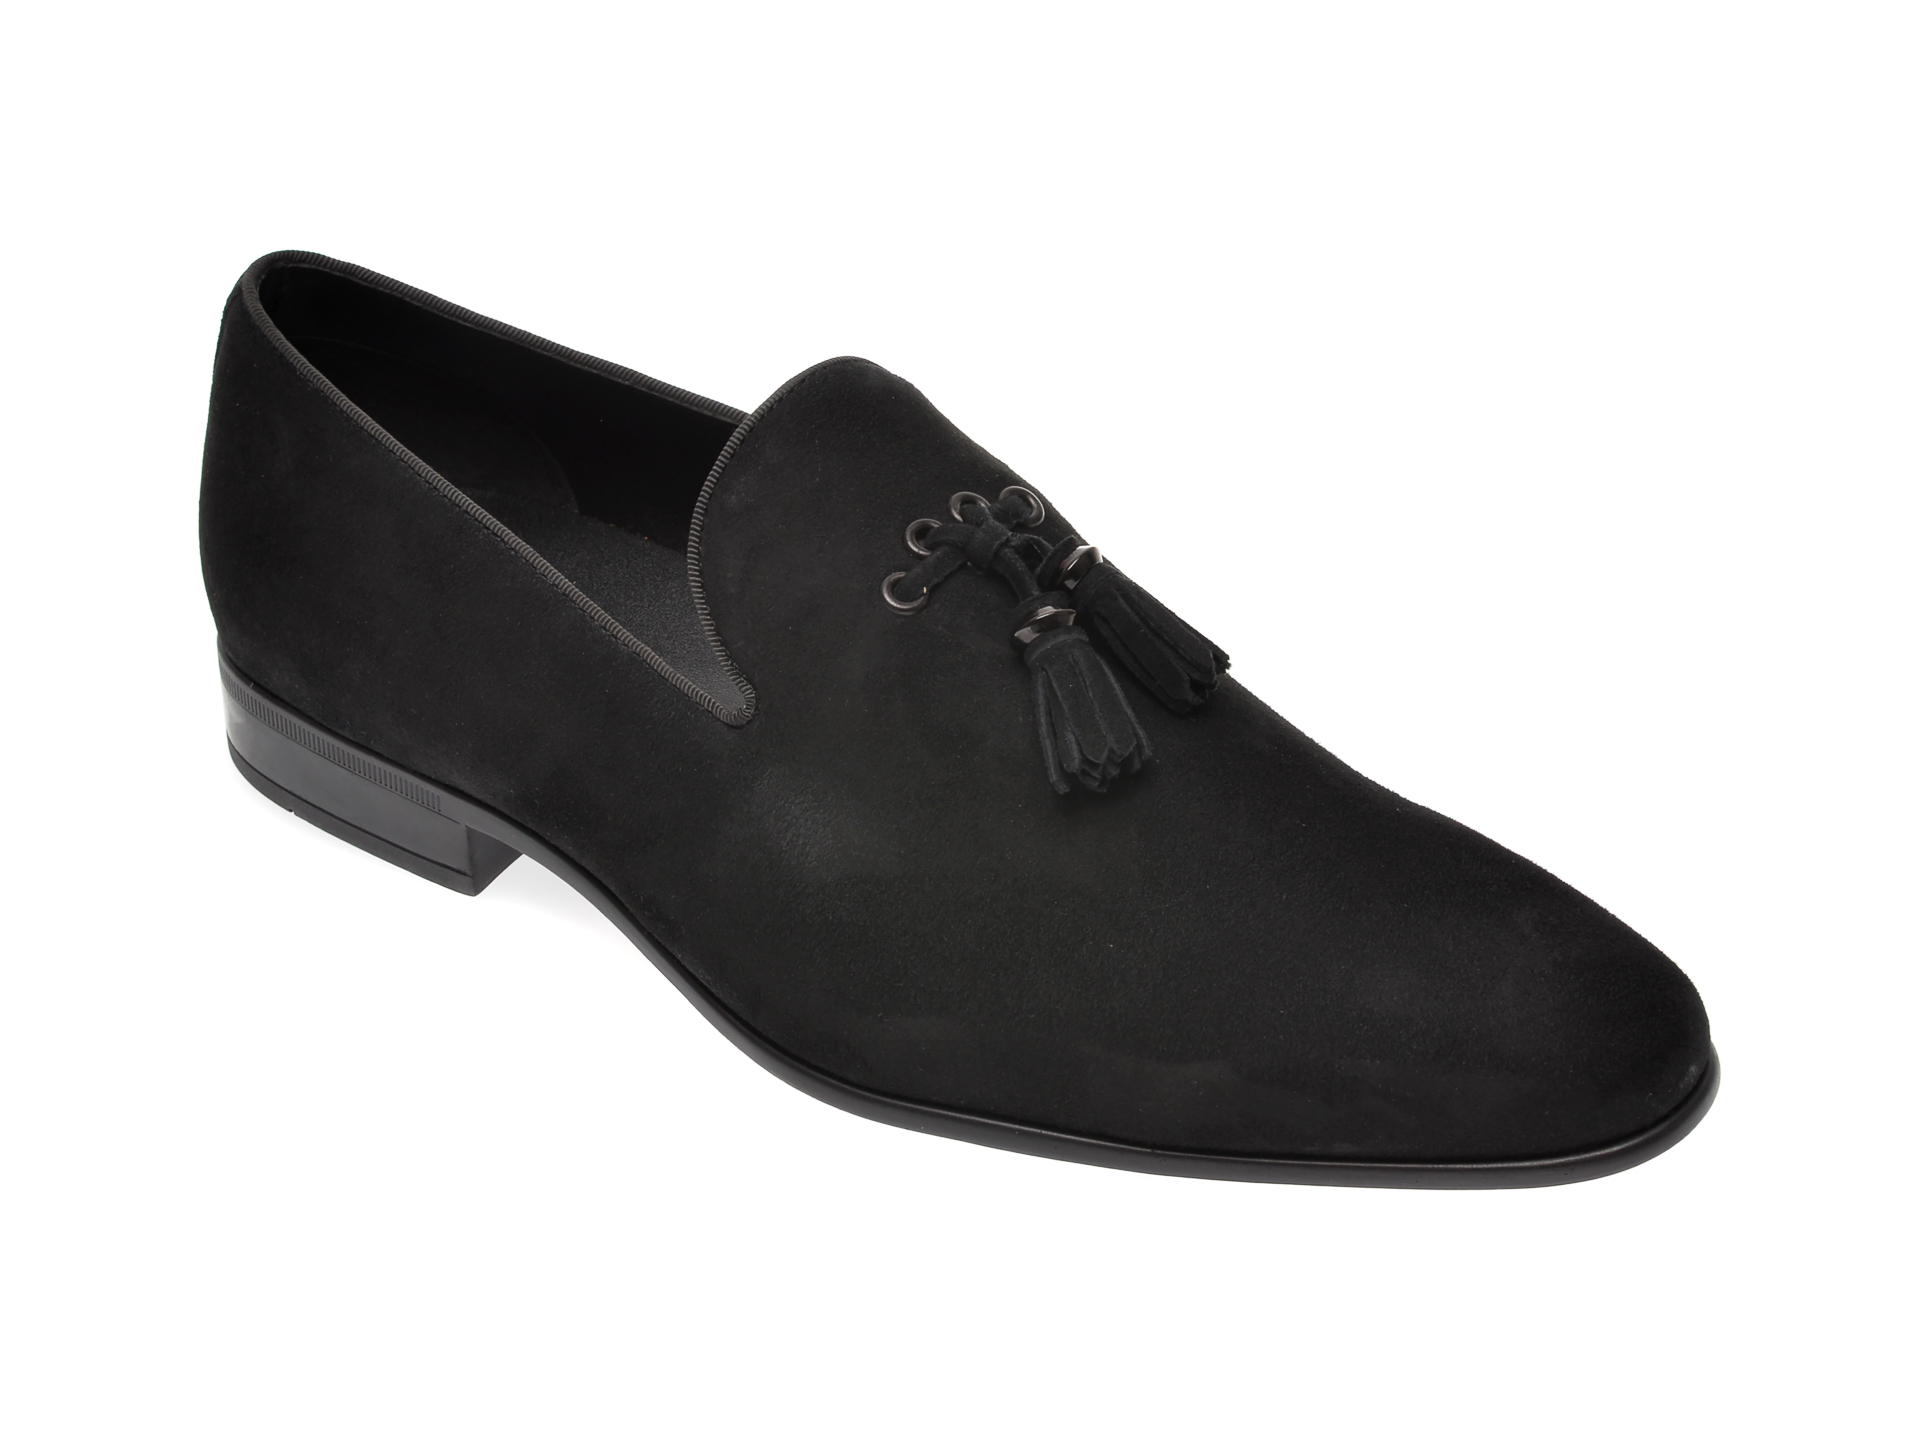 Pantofi ALDO negri, Muntelui001, din piele intoarsa